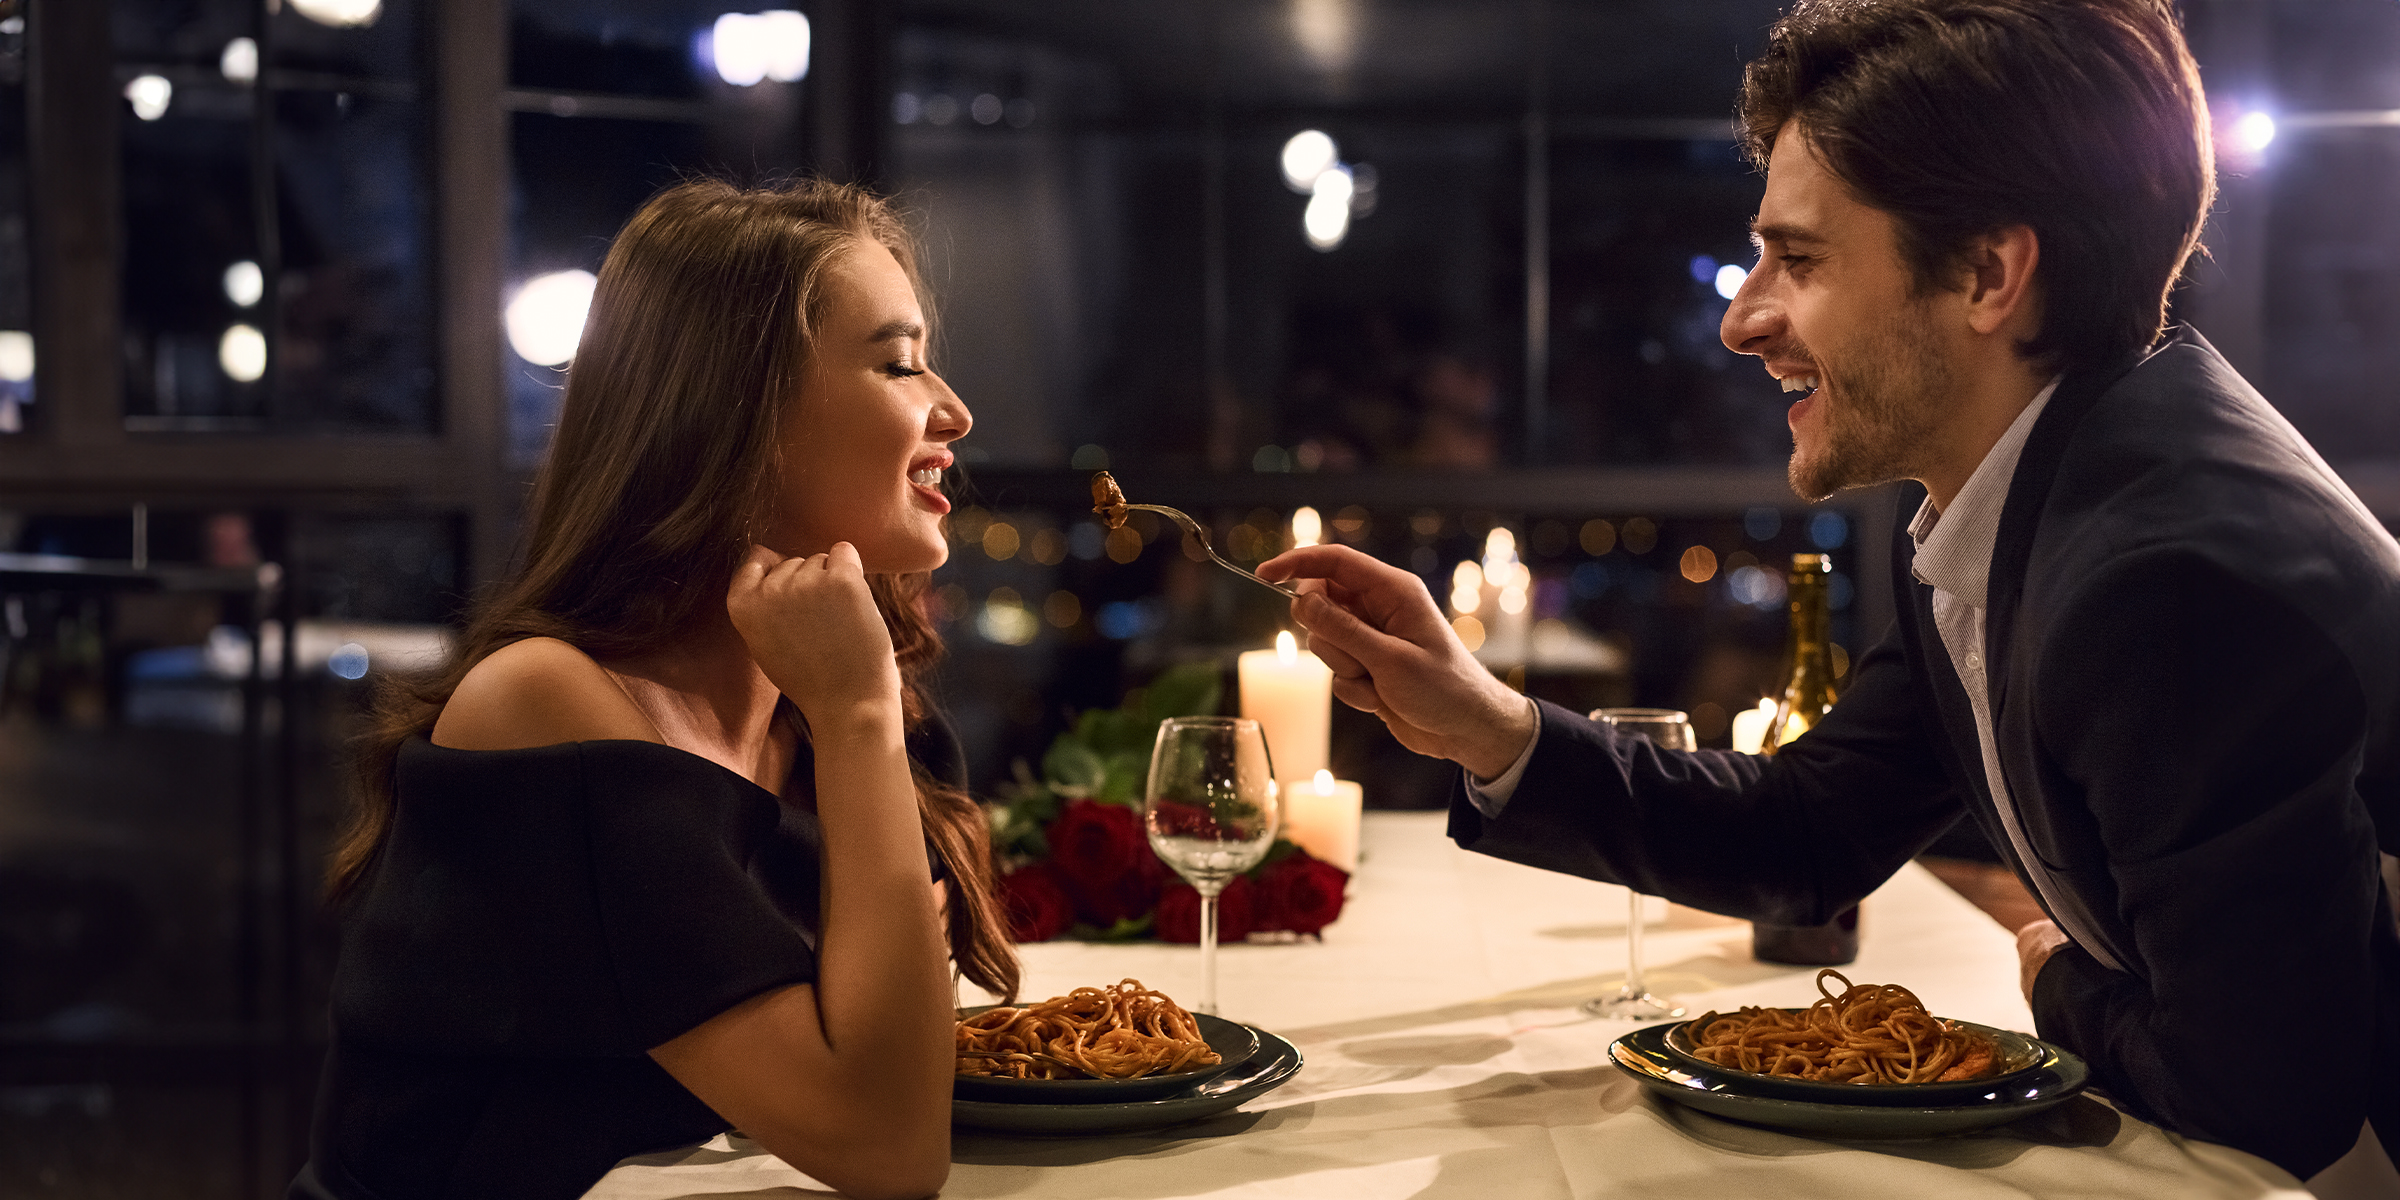 Ein Paar beim Date | Quelle: Shutterstock